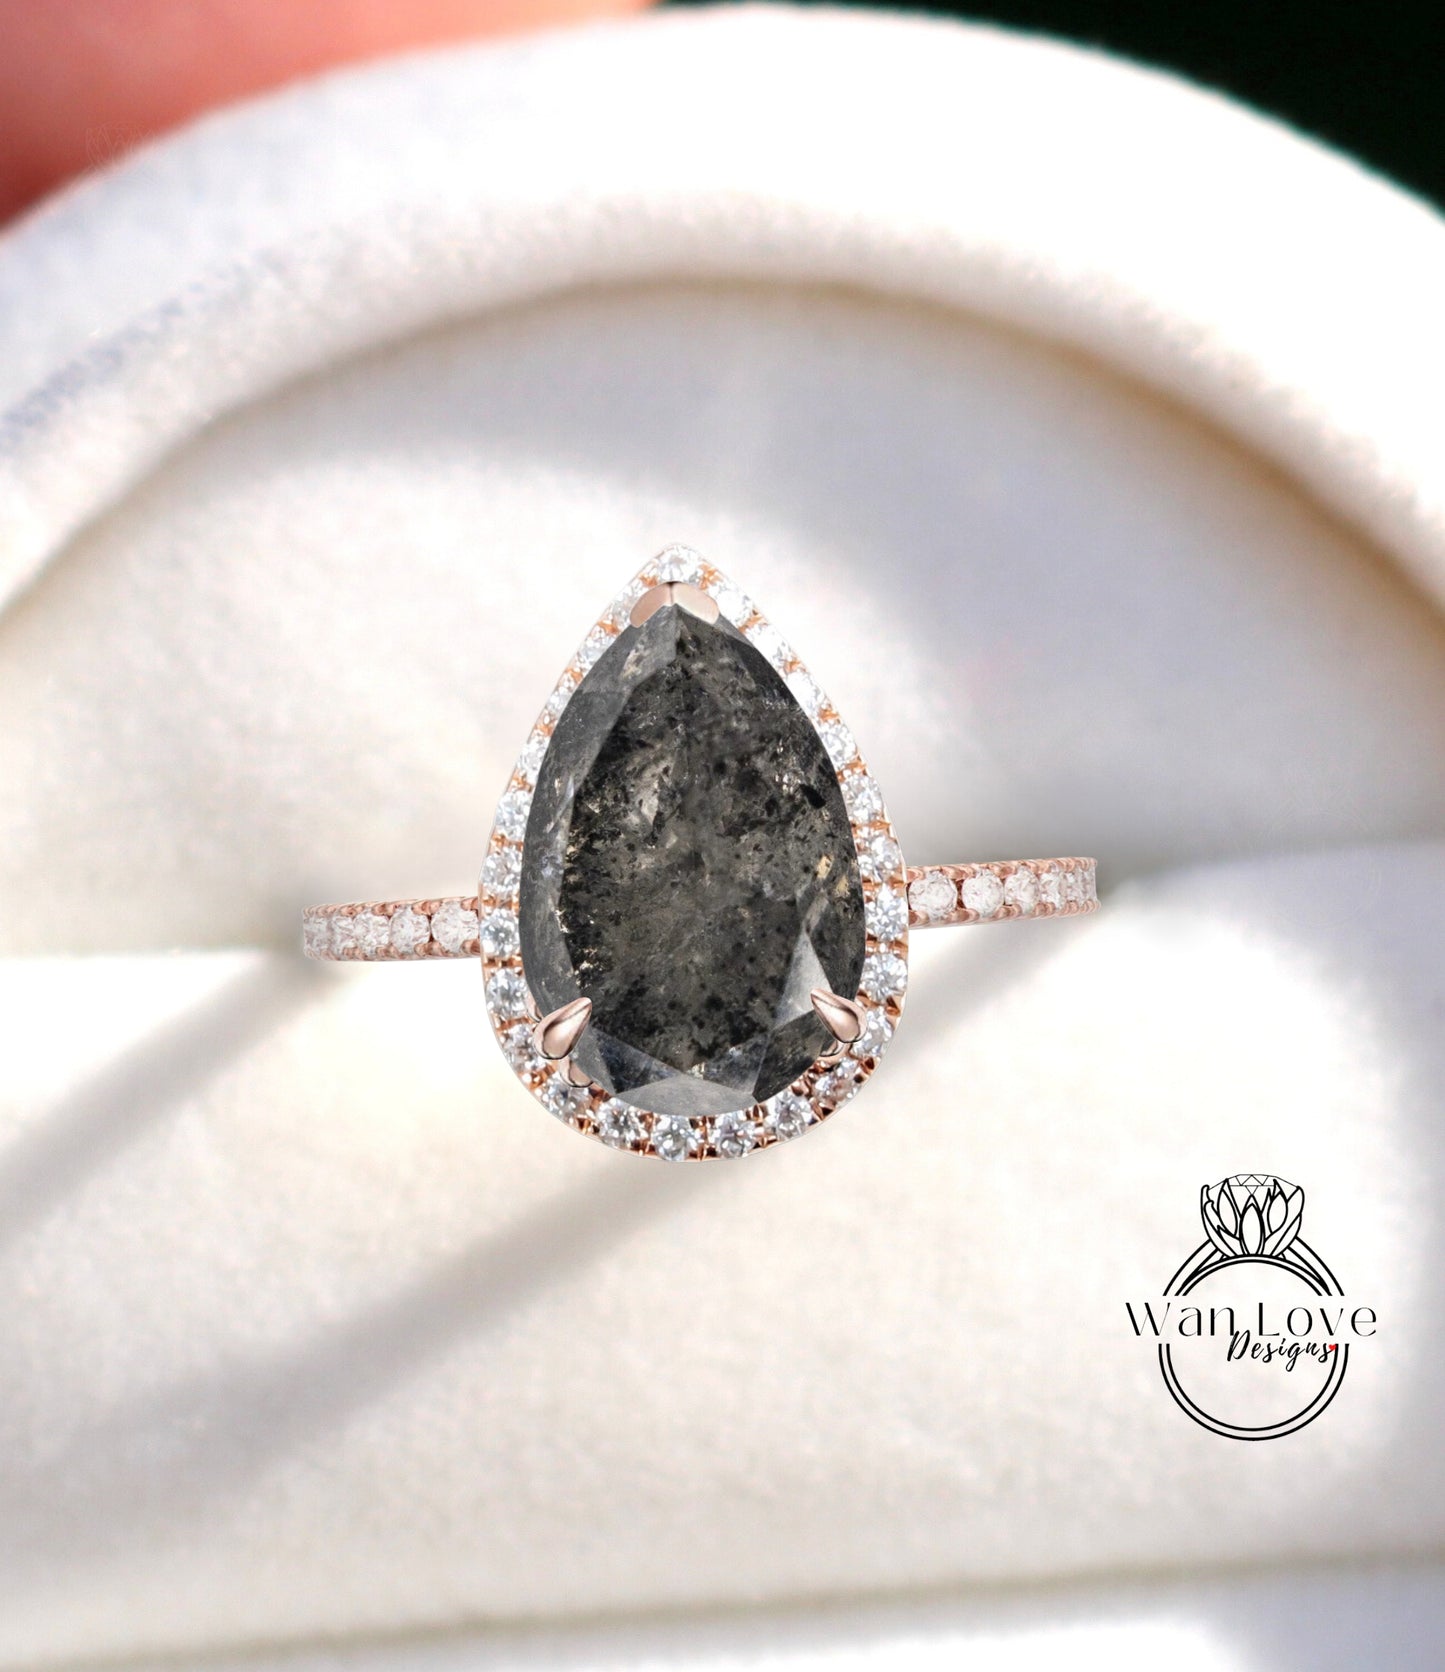 Anello di fidanzamento con diamante sale e pepe a forma di pera vintage, anello Halo in oro rosa 14k con taglio a pera, anello nuziale anello anniversario proposta anello